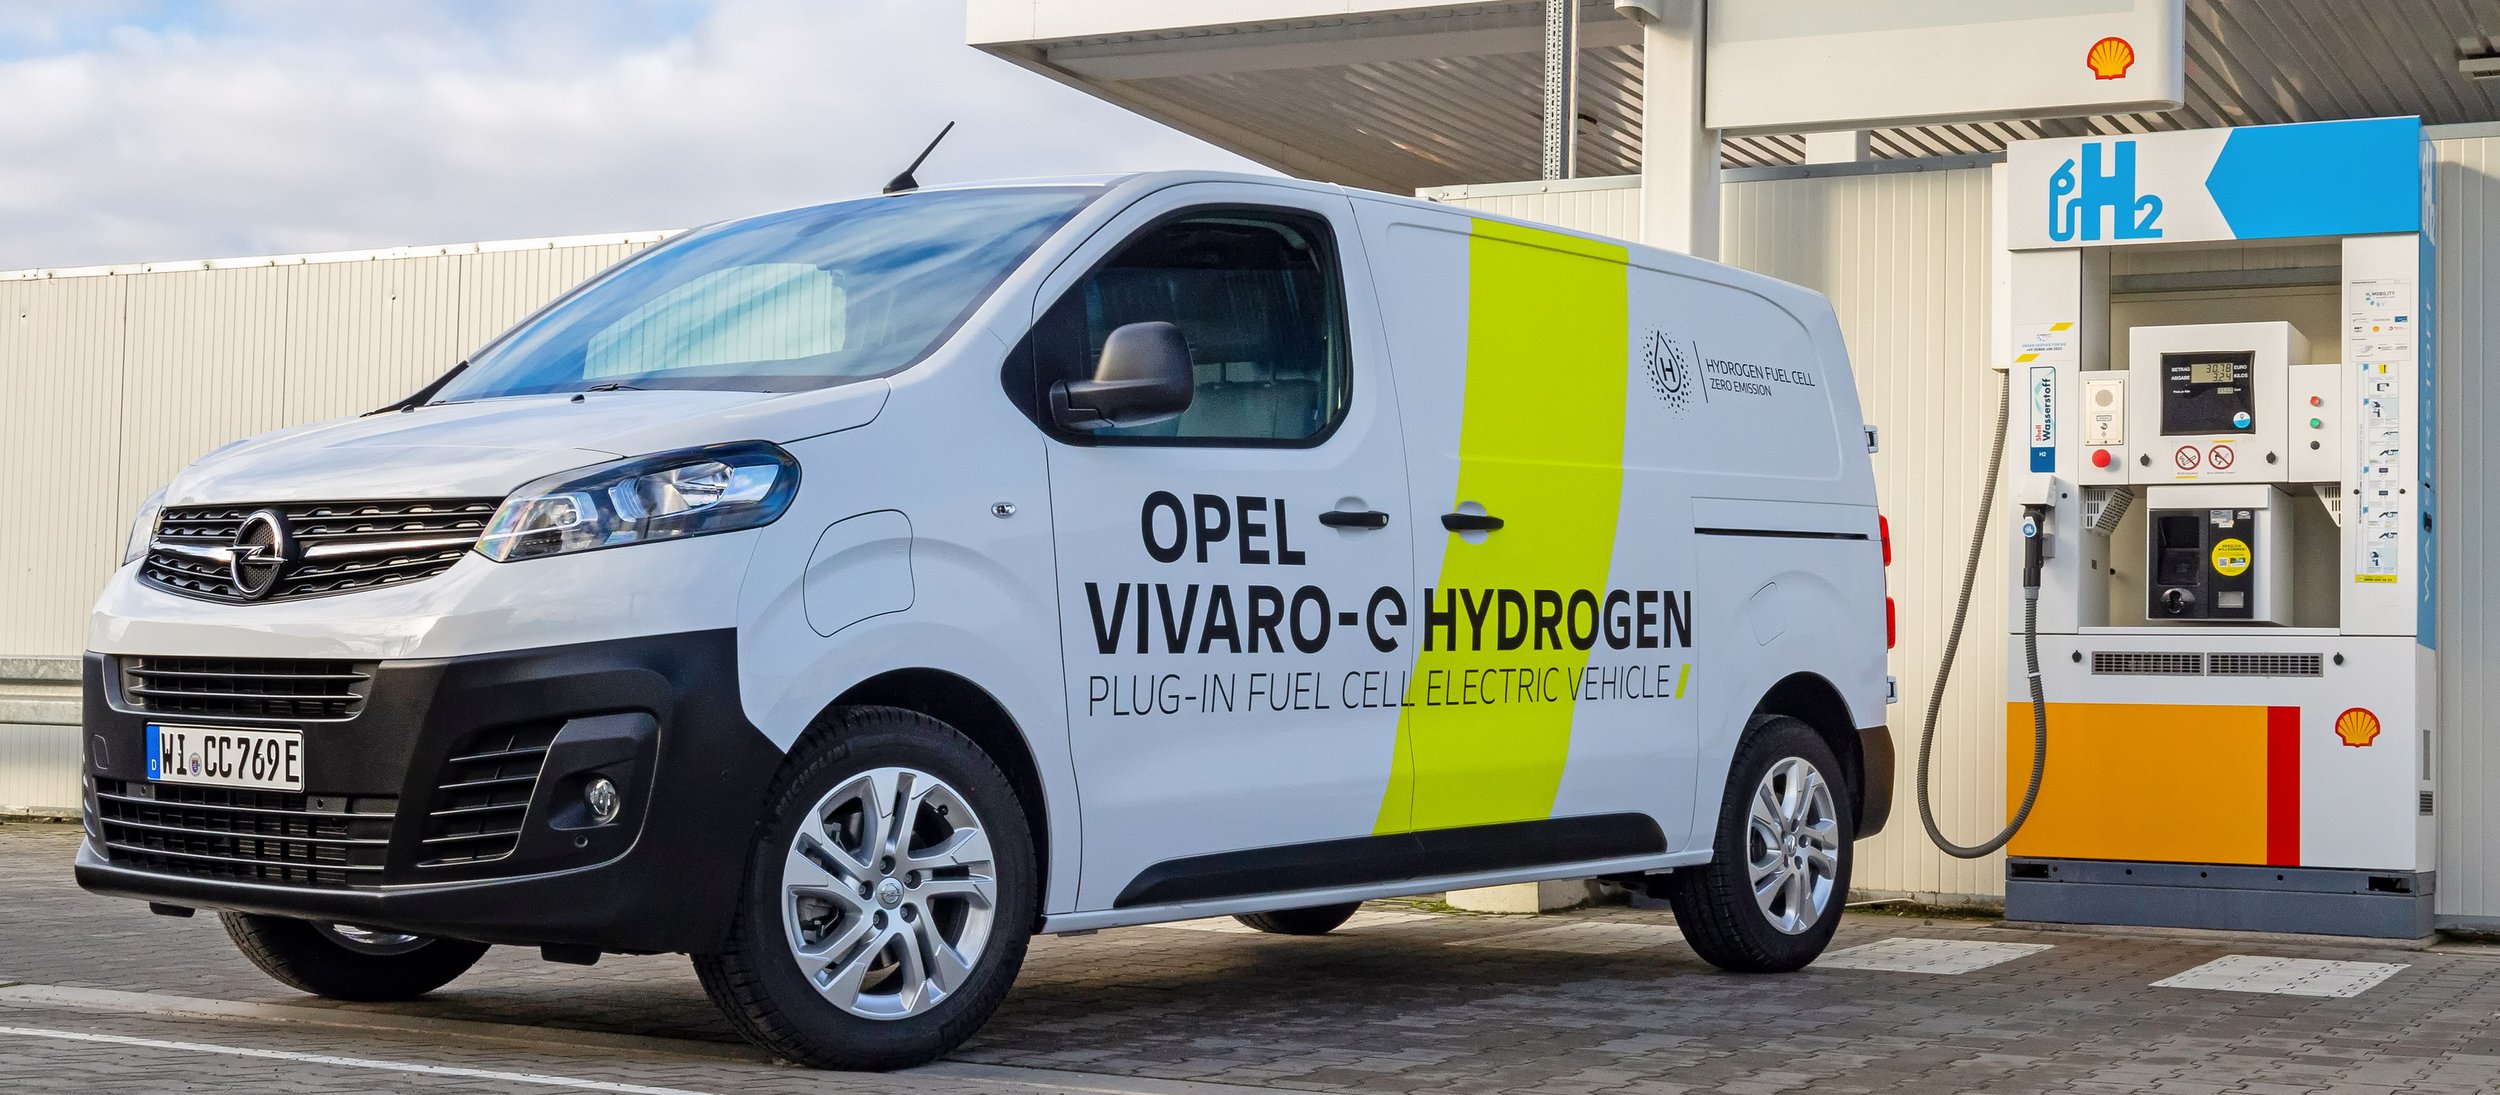 Szolgálatba állt az első hidrogénes Opel Vivaro 9